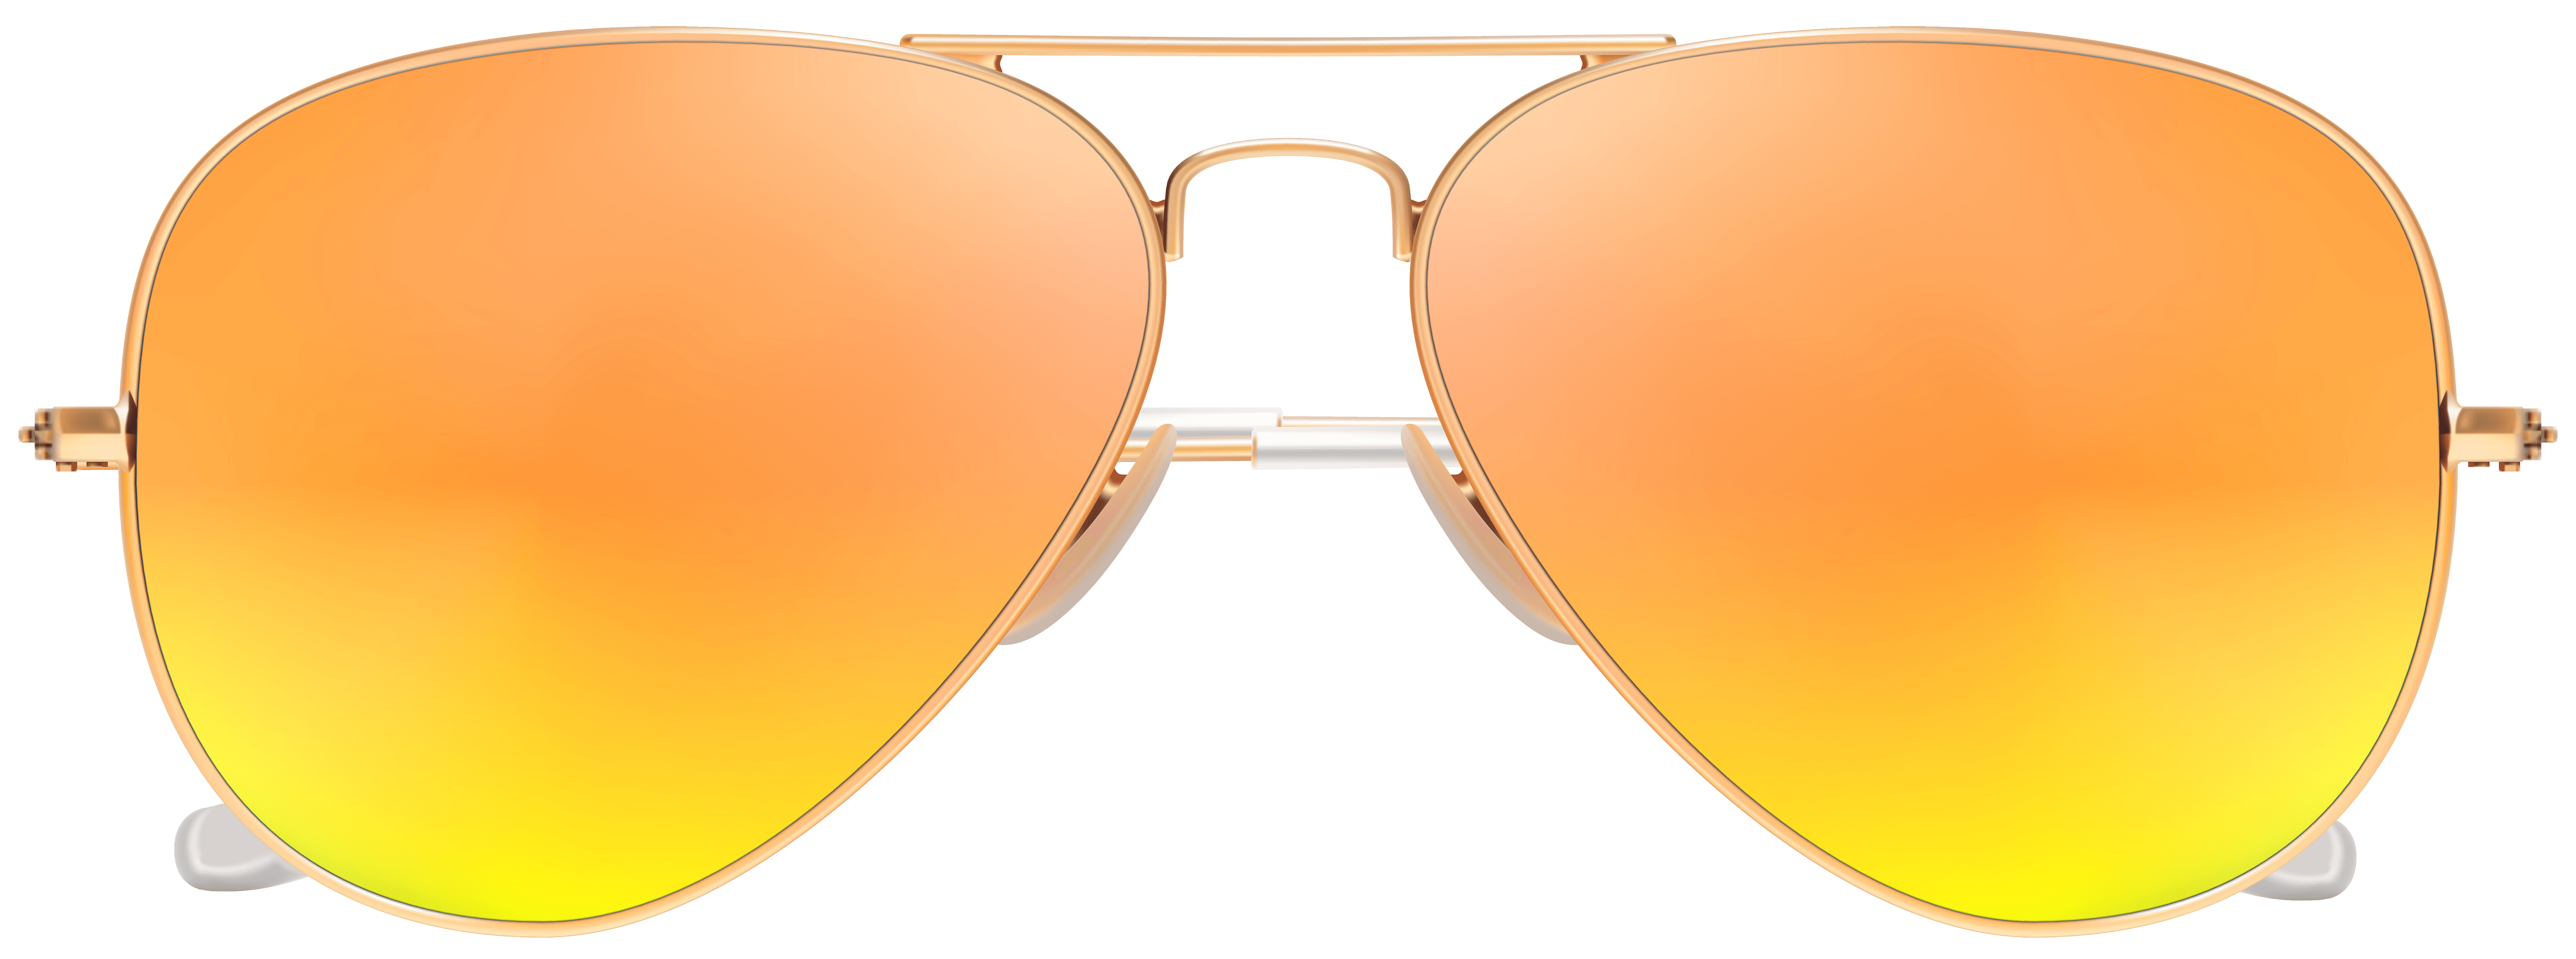 clipart sunglasses colored